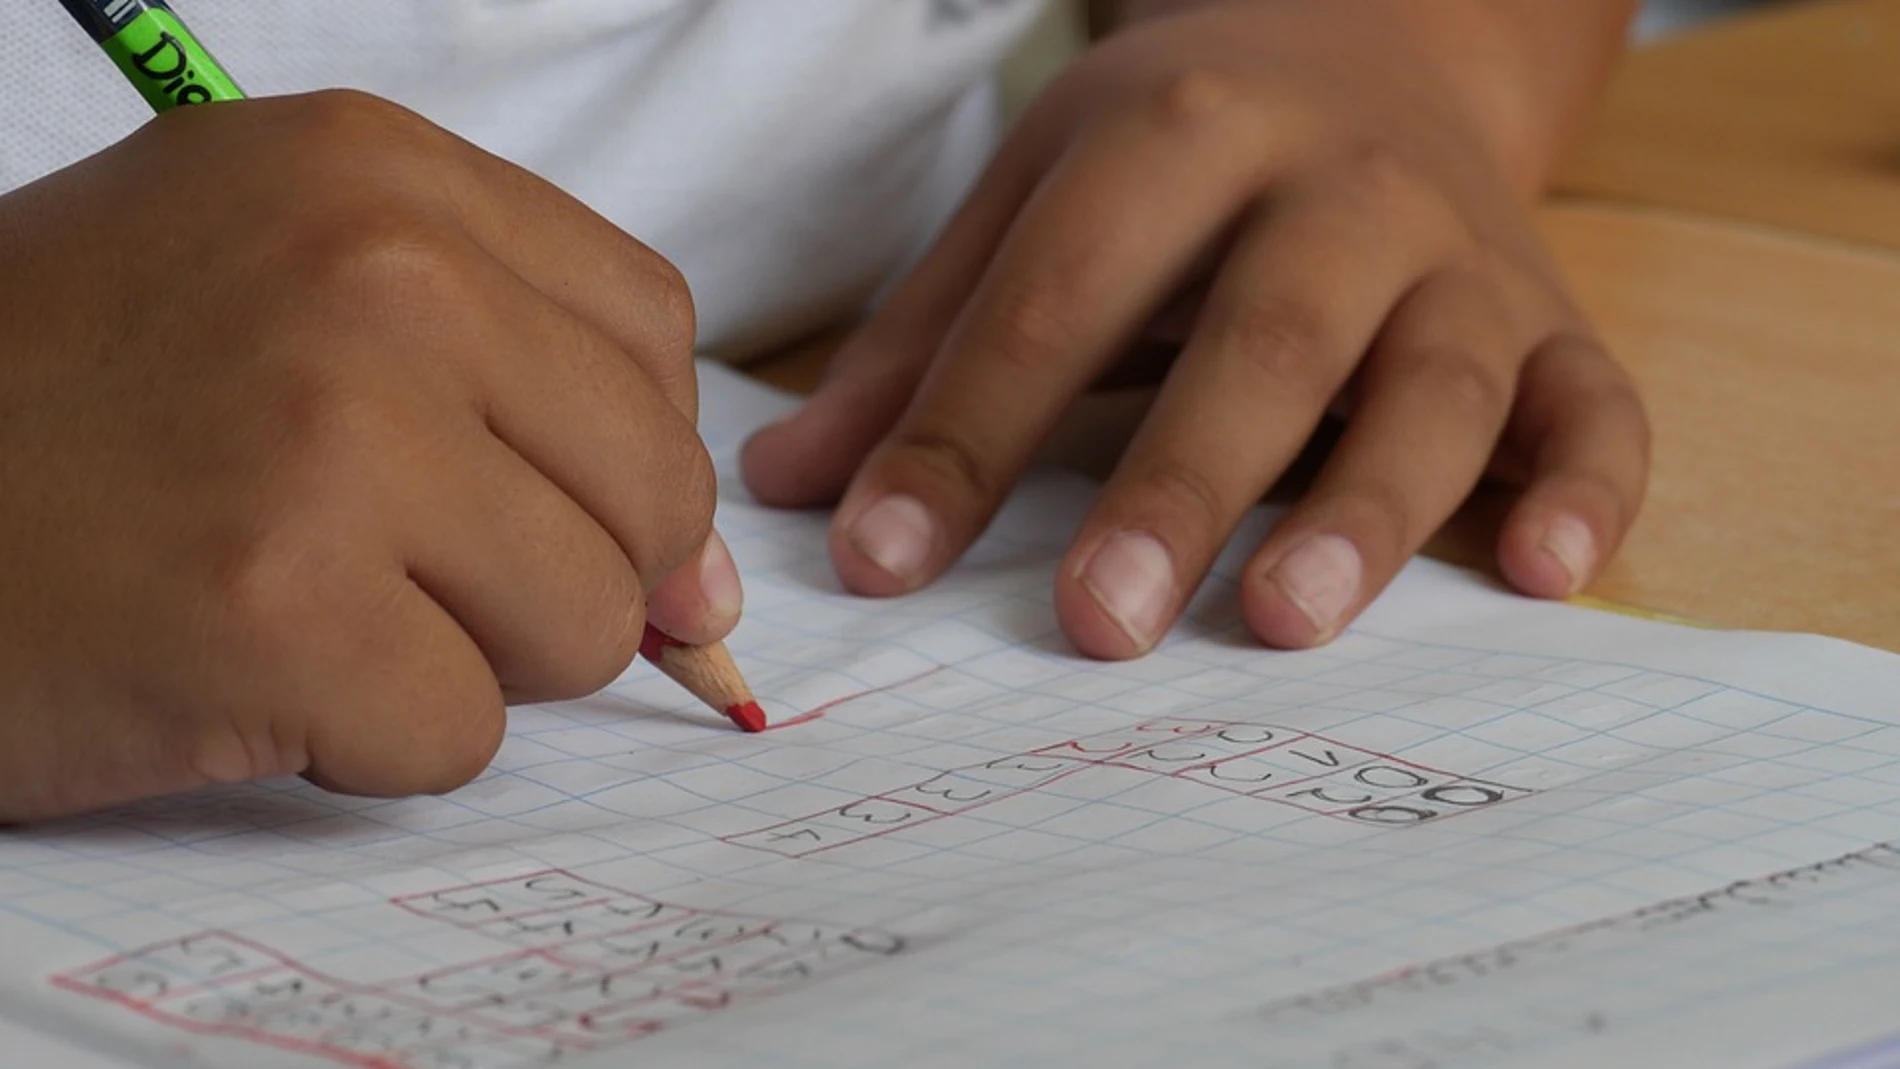 La jornada escolar discontinua mejora el rendimiento de los niños y adolescentes, según los pediatras valencianos